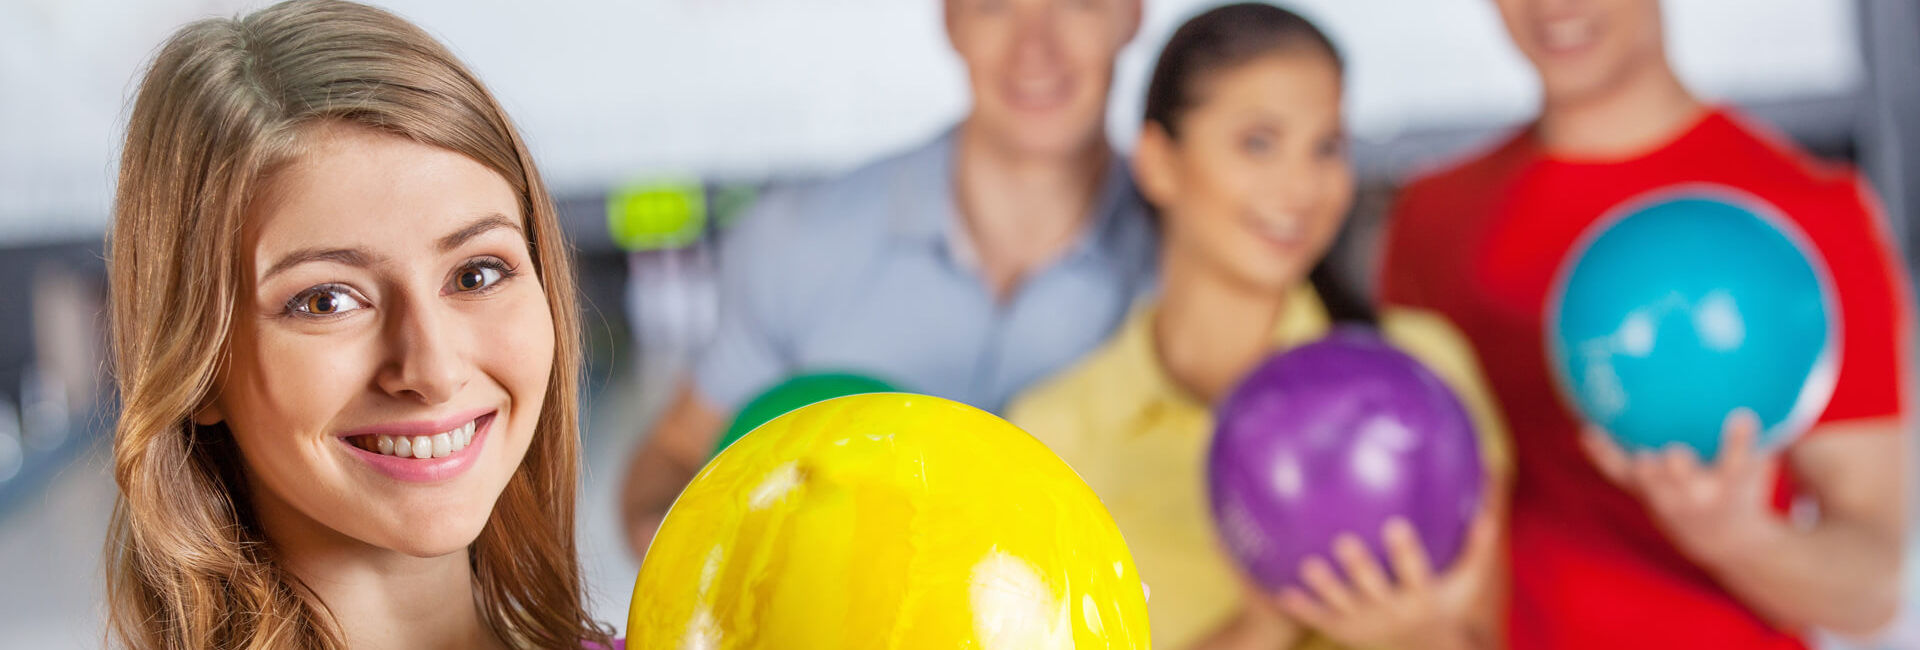 Schoolkinderen houden bowlingbal vast